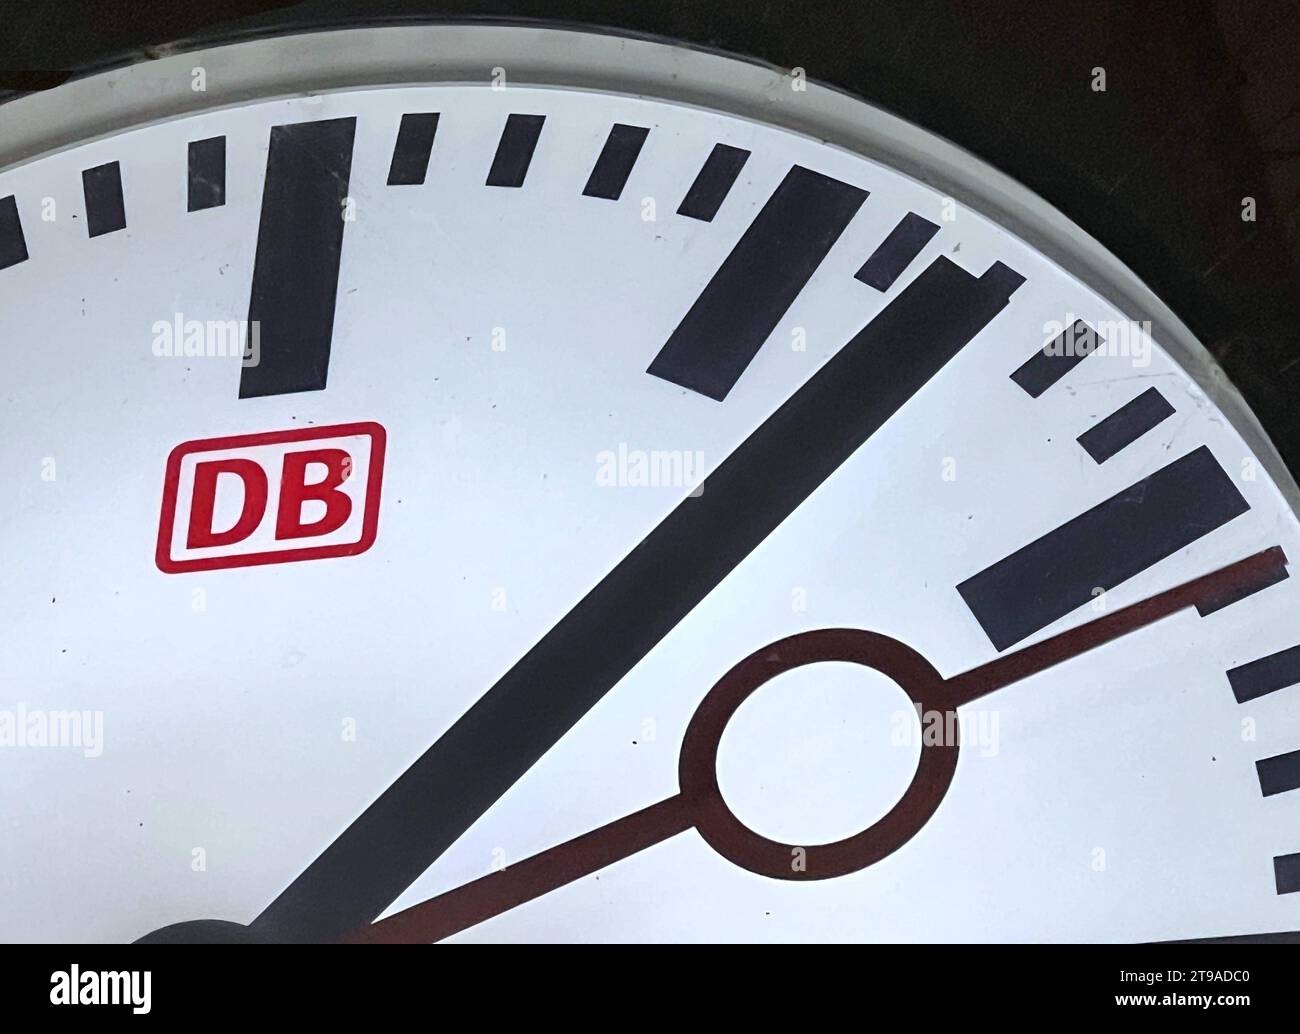 Bahnhofsuhr der Deutschen Bahn *** orologio della stazione Deutsche Bahn Copyright: Xmix1x credito: Imago/Alamy Live News Foto Stock